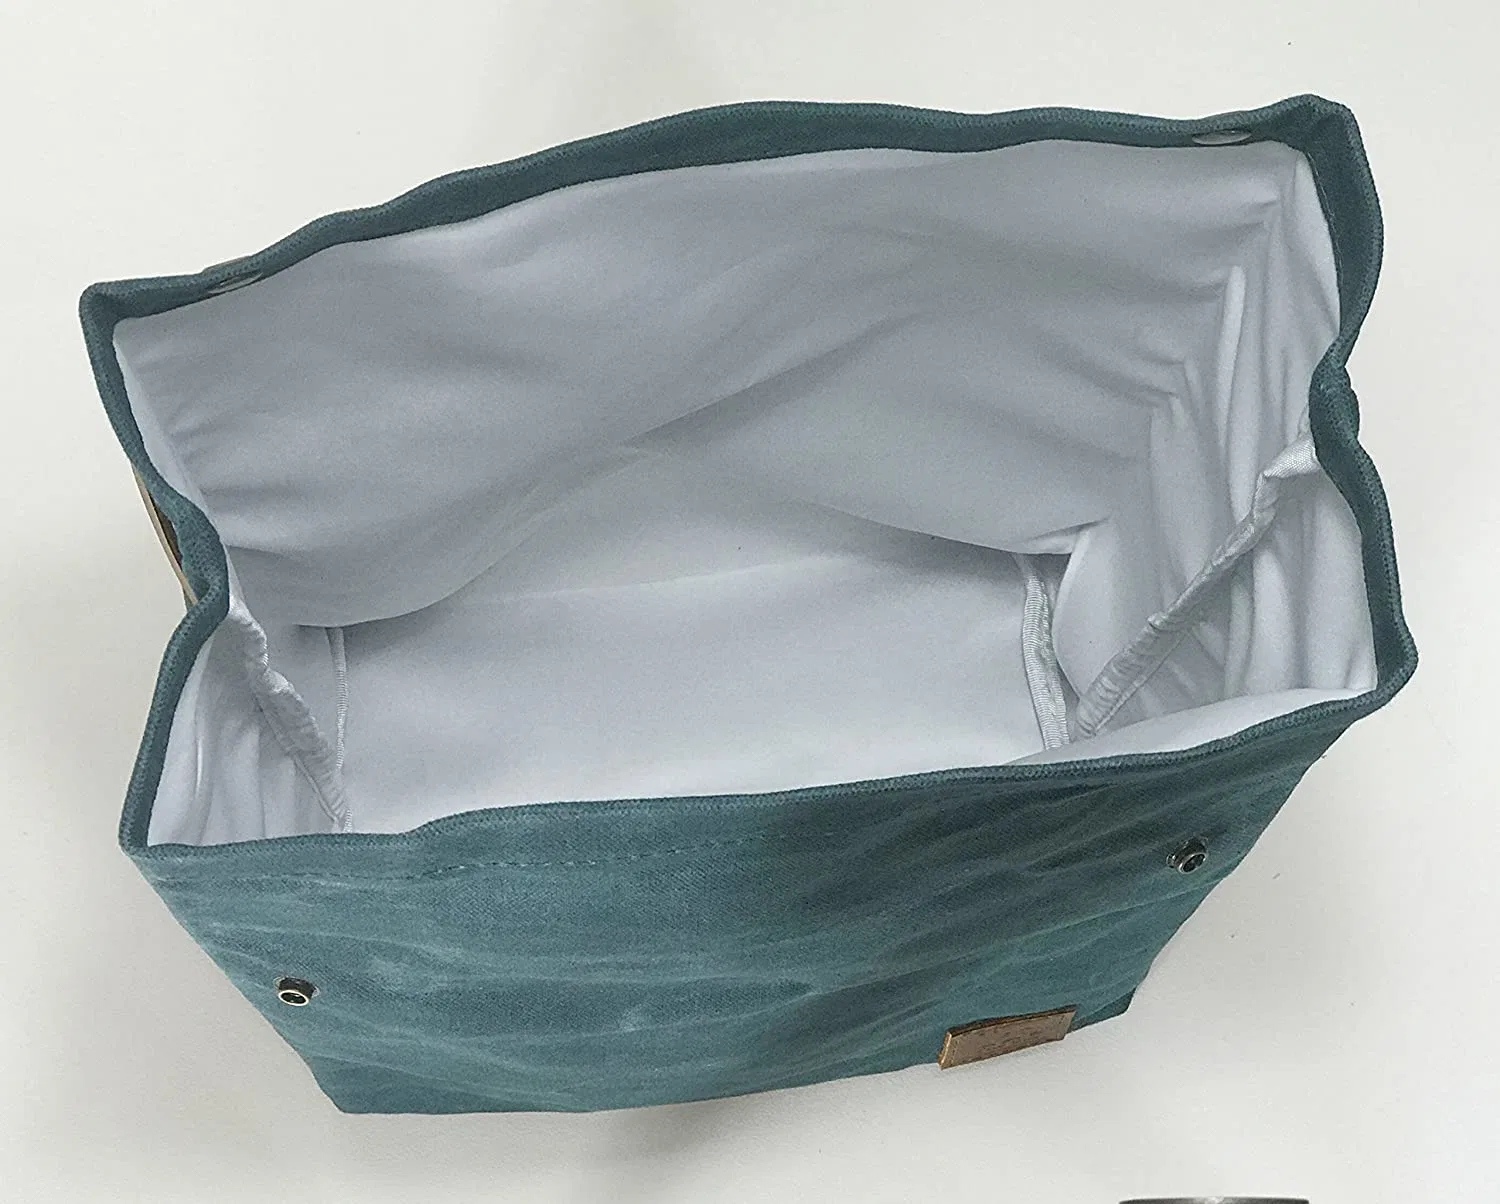 O almoço Caixa Saco grande parte superior do rolo de lona encerada arborizada Tote bolsa com alça de couro e fecho de encaixe de Latão